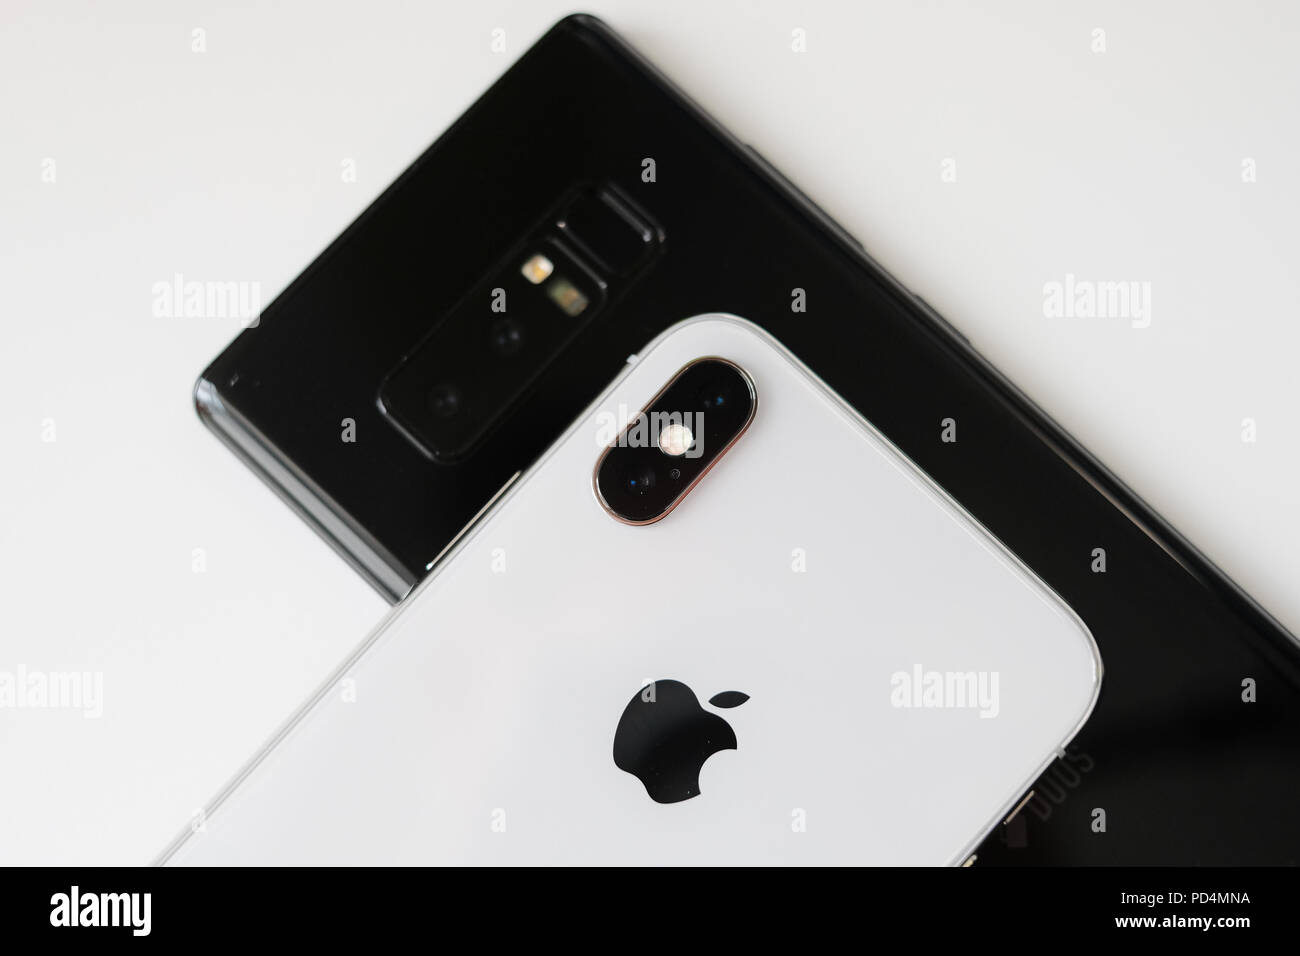 RIGA, 1. NOVEMBER - Neu lancierte Apple iPhone X ist neben Samsung Galaxy 8 für redaktionelle Zwecke angezeigt Stockfoto